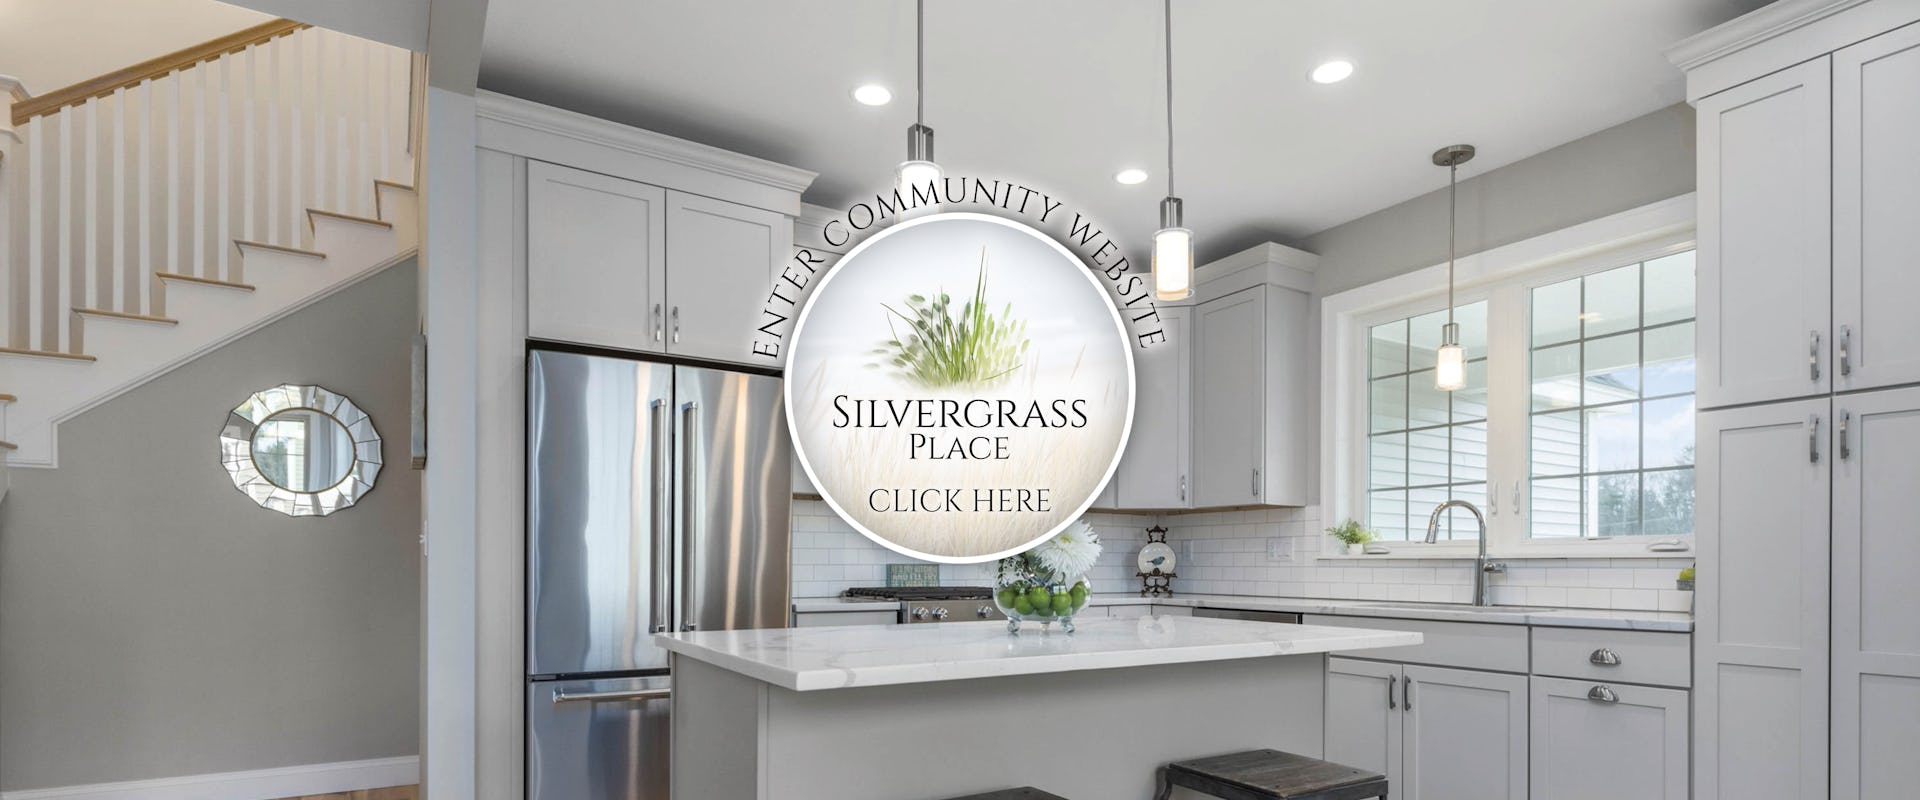 Silvergrass Website Banner.jpg